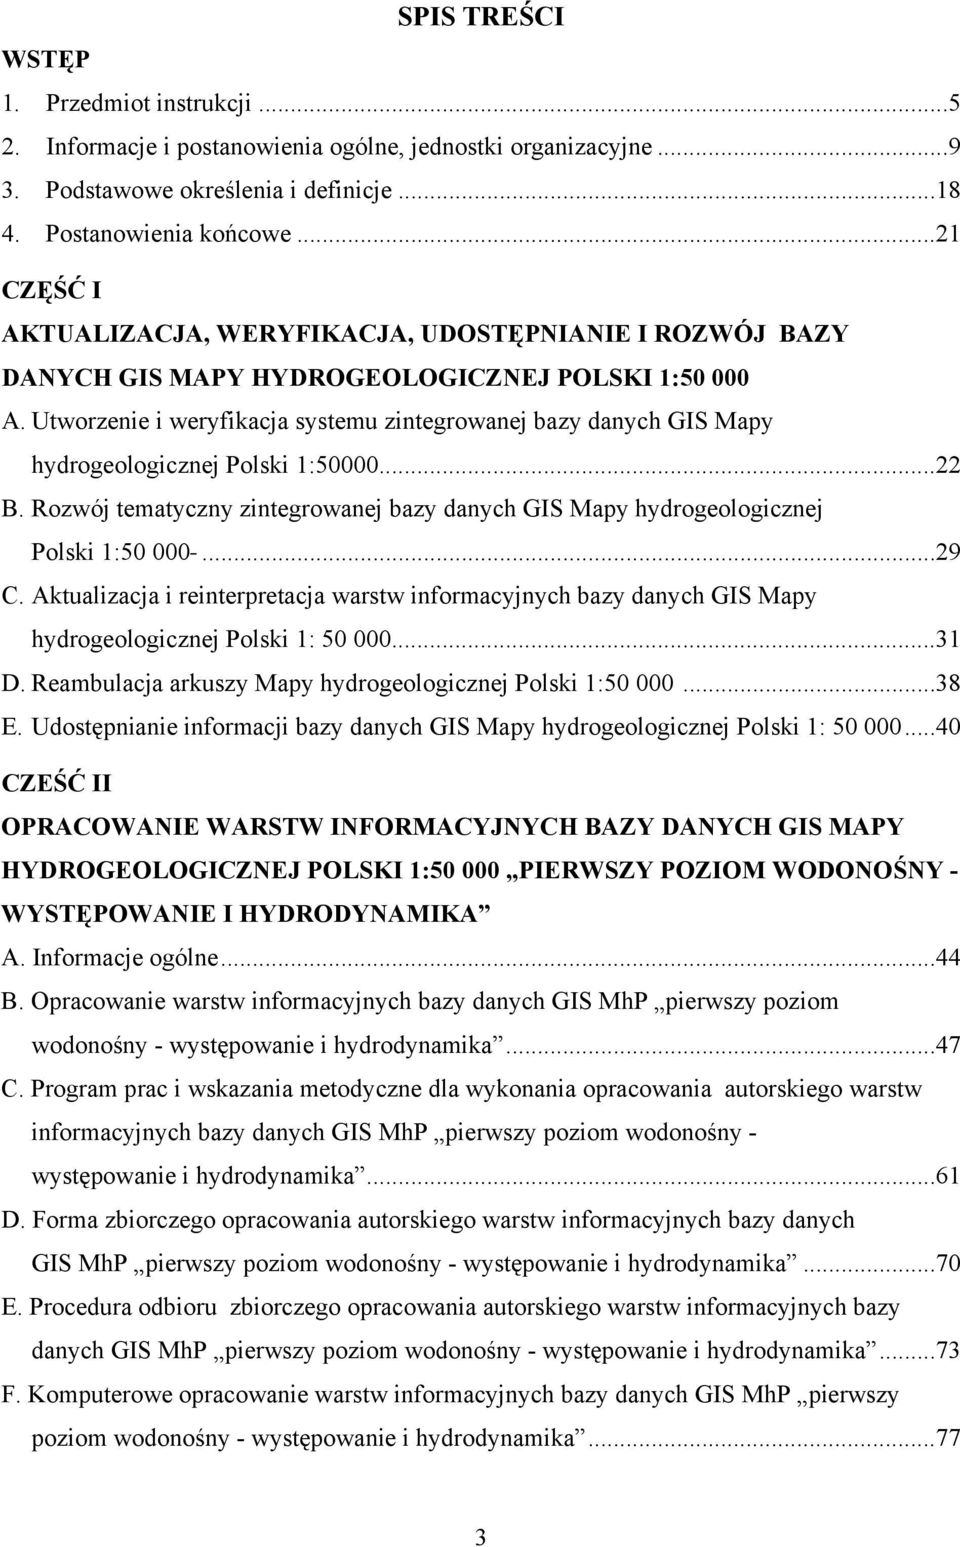 Utworzenie i weryfikacja systemu zintegrowanej bazy danych GIS Mapy hydrogeologicznej Polski 1:50000...22 B. Rozwój tematyczny zintegrowanej bazy danych GIS Mapy hydrogeologicznej Polski 1:50 000.